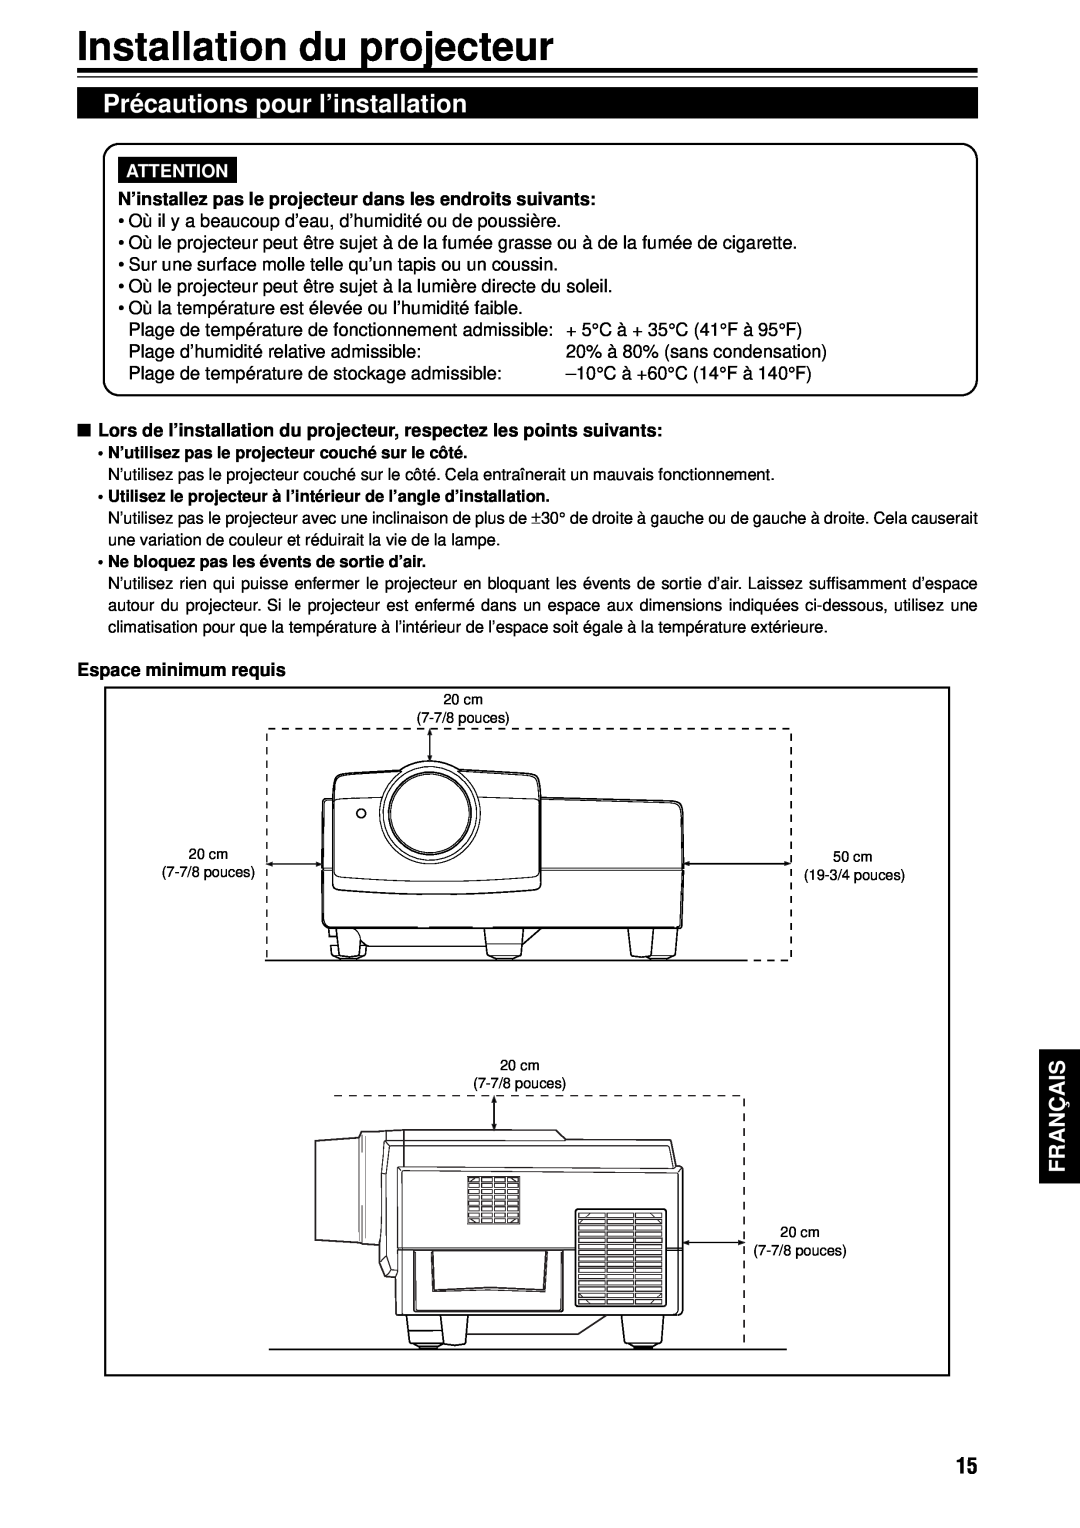 JVC G1000S manual Installation du projecteur, Précautions pour l’installation, Français, Espace minimum requis 